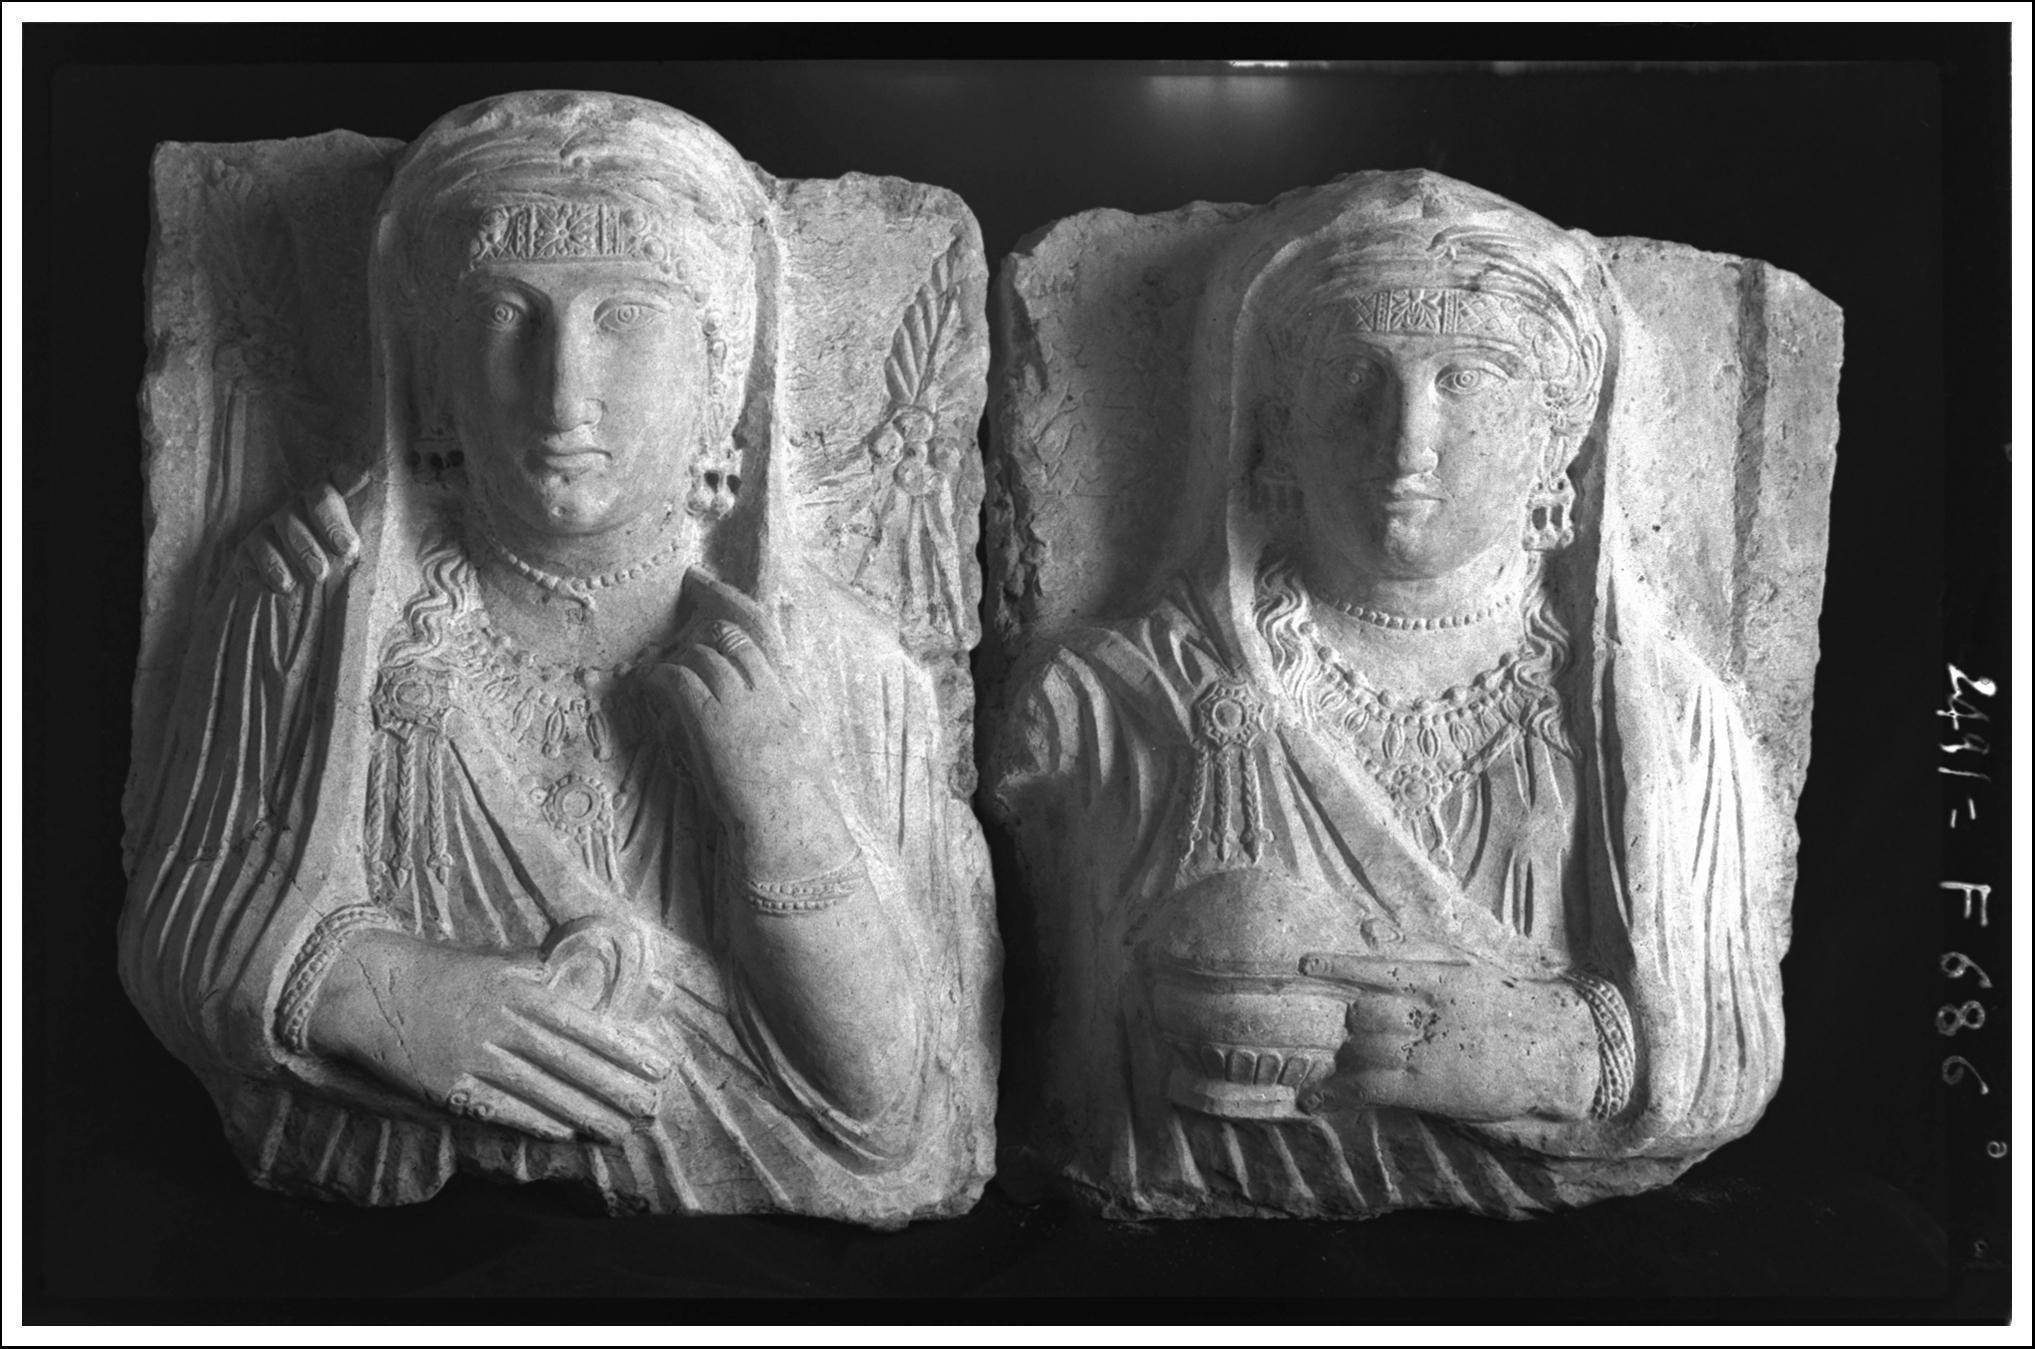 Tombeau de Iarhaï, deux plaques de loculi avec buste de femme et inscription palmyrénienne provenant de l'exèdre ouest ; deux bustes féminin, texte araméen illisible (Palmyre, Syrie) ca 1923